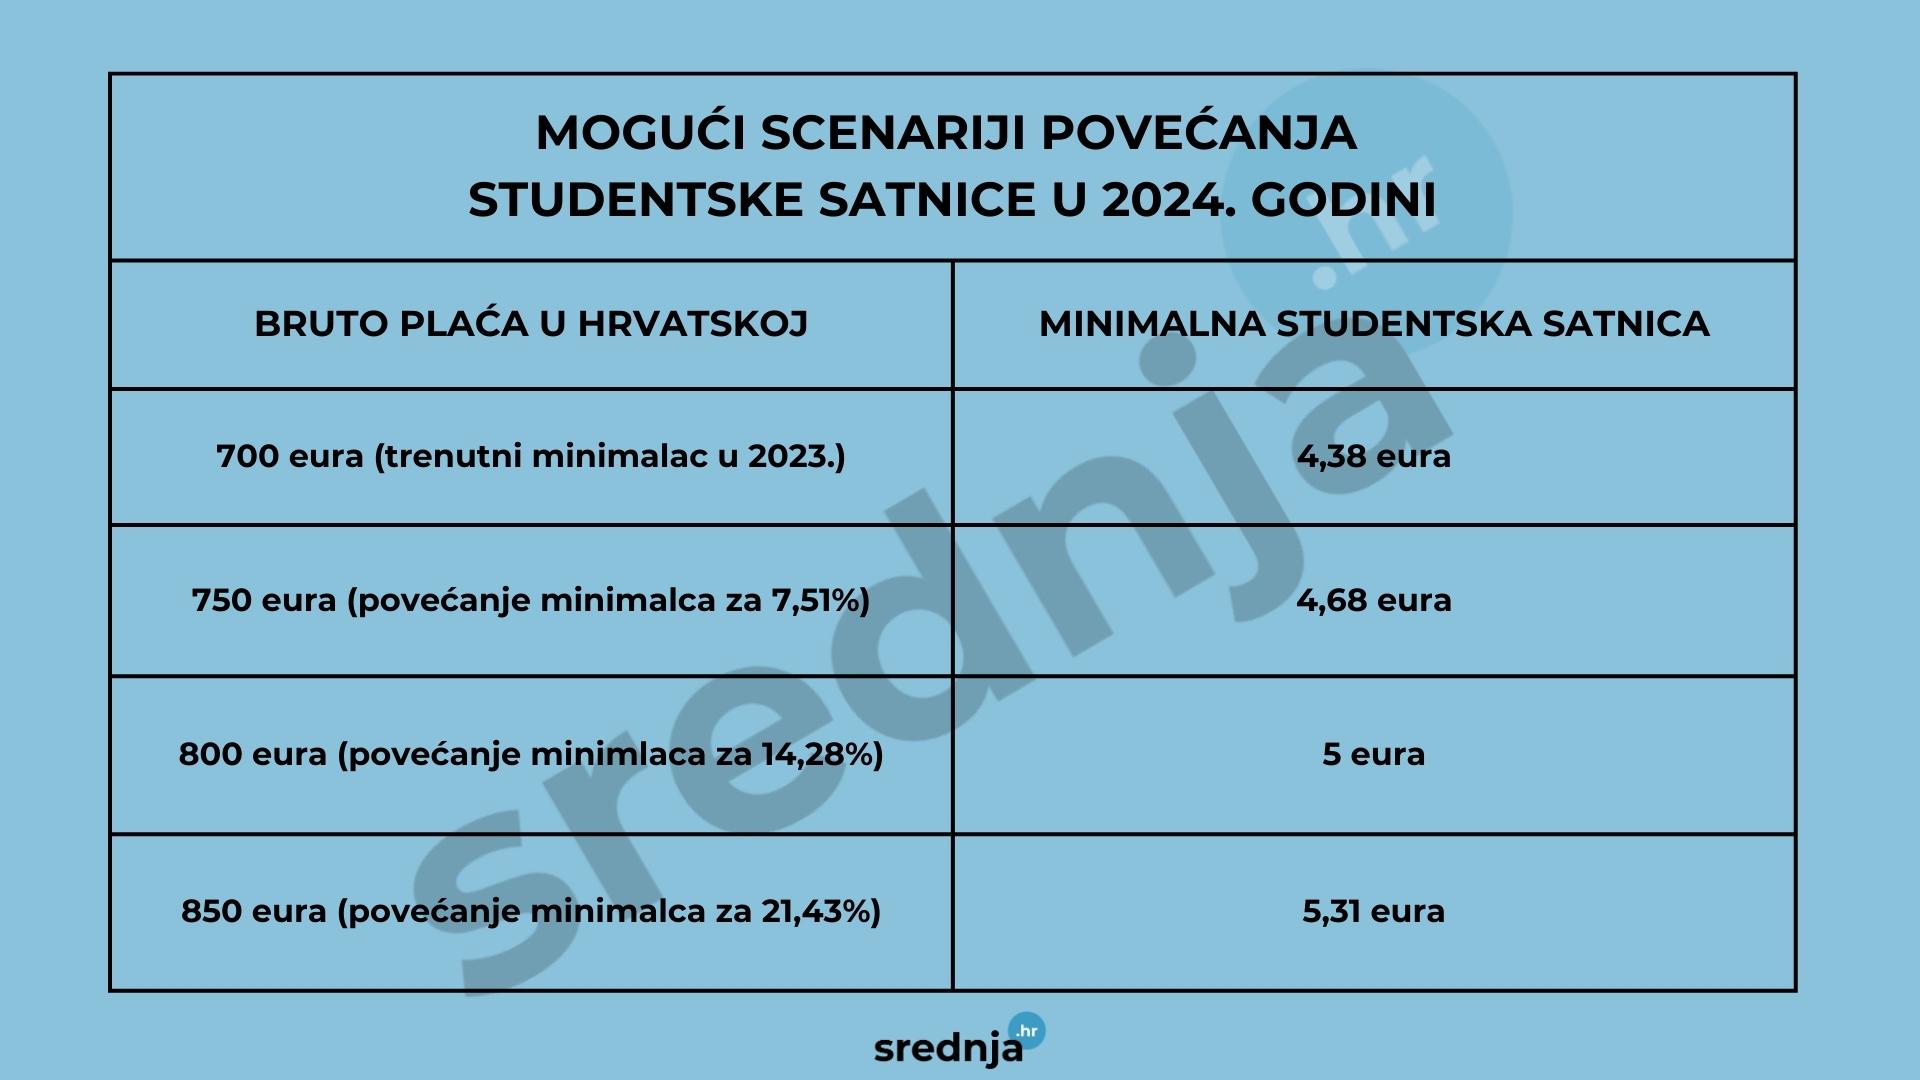 Mogući scenariji povećanja minimalne studentske satnice u 2024.